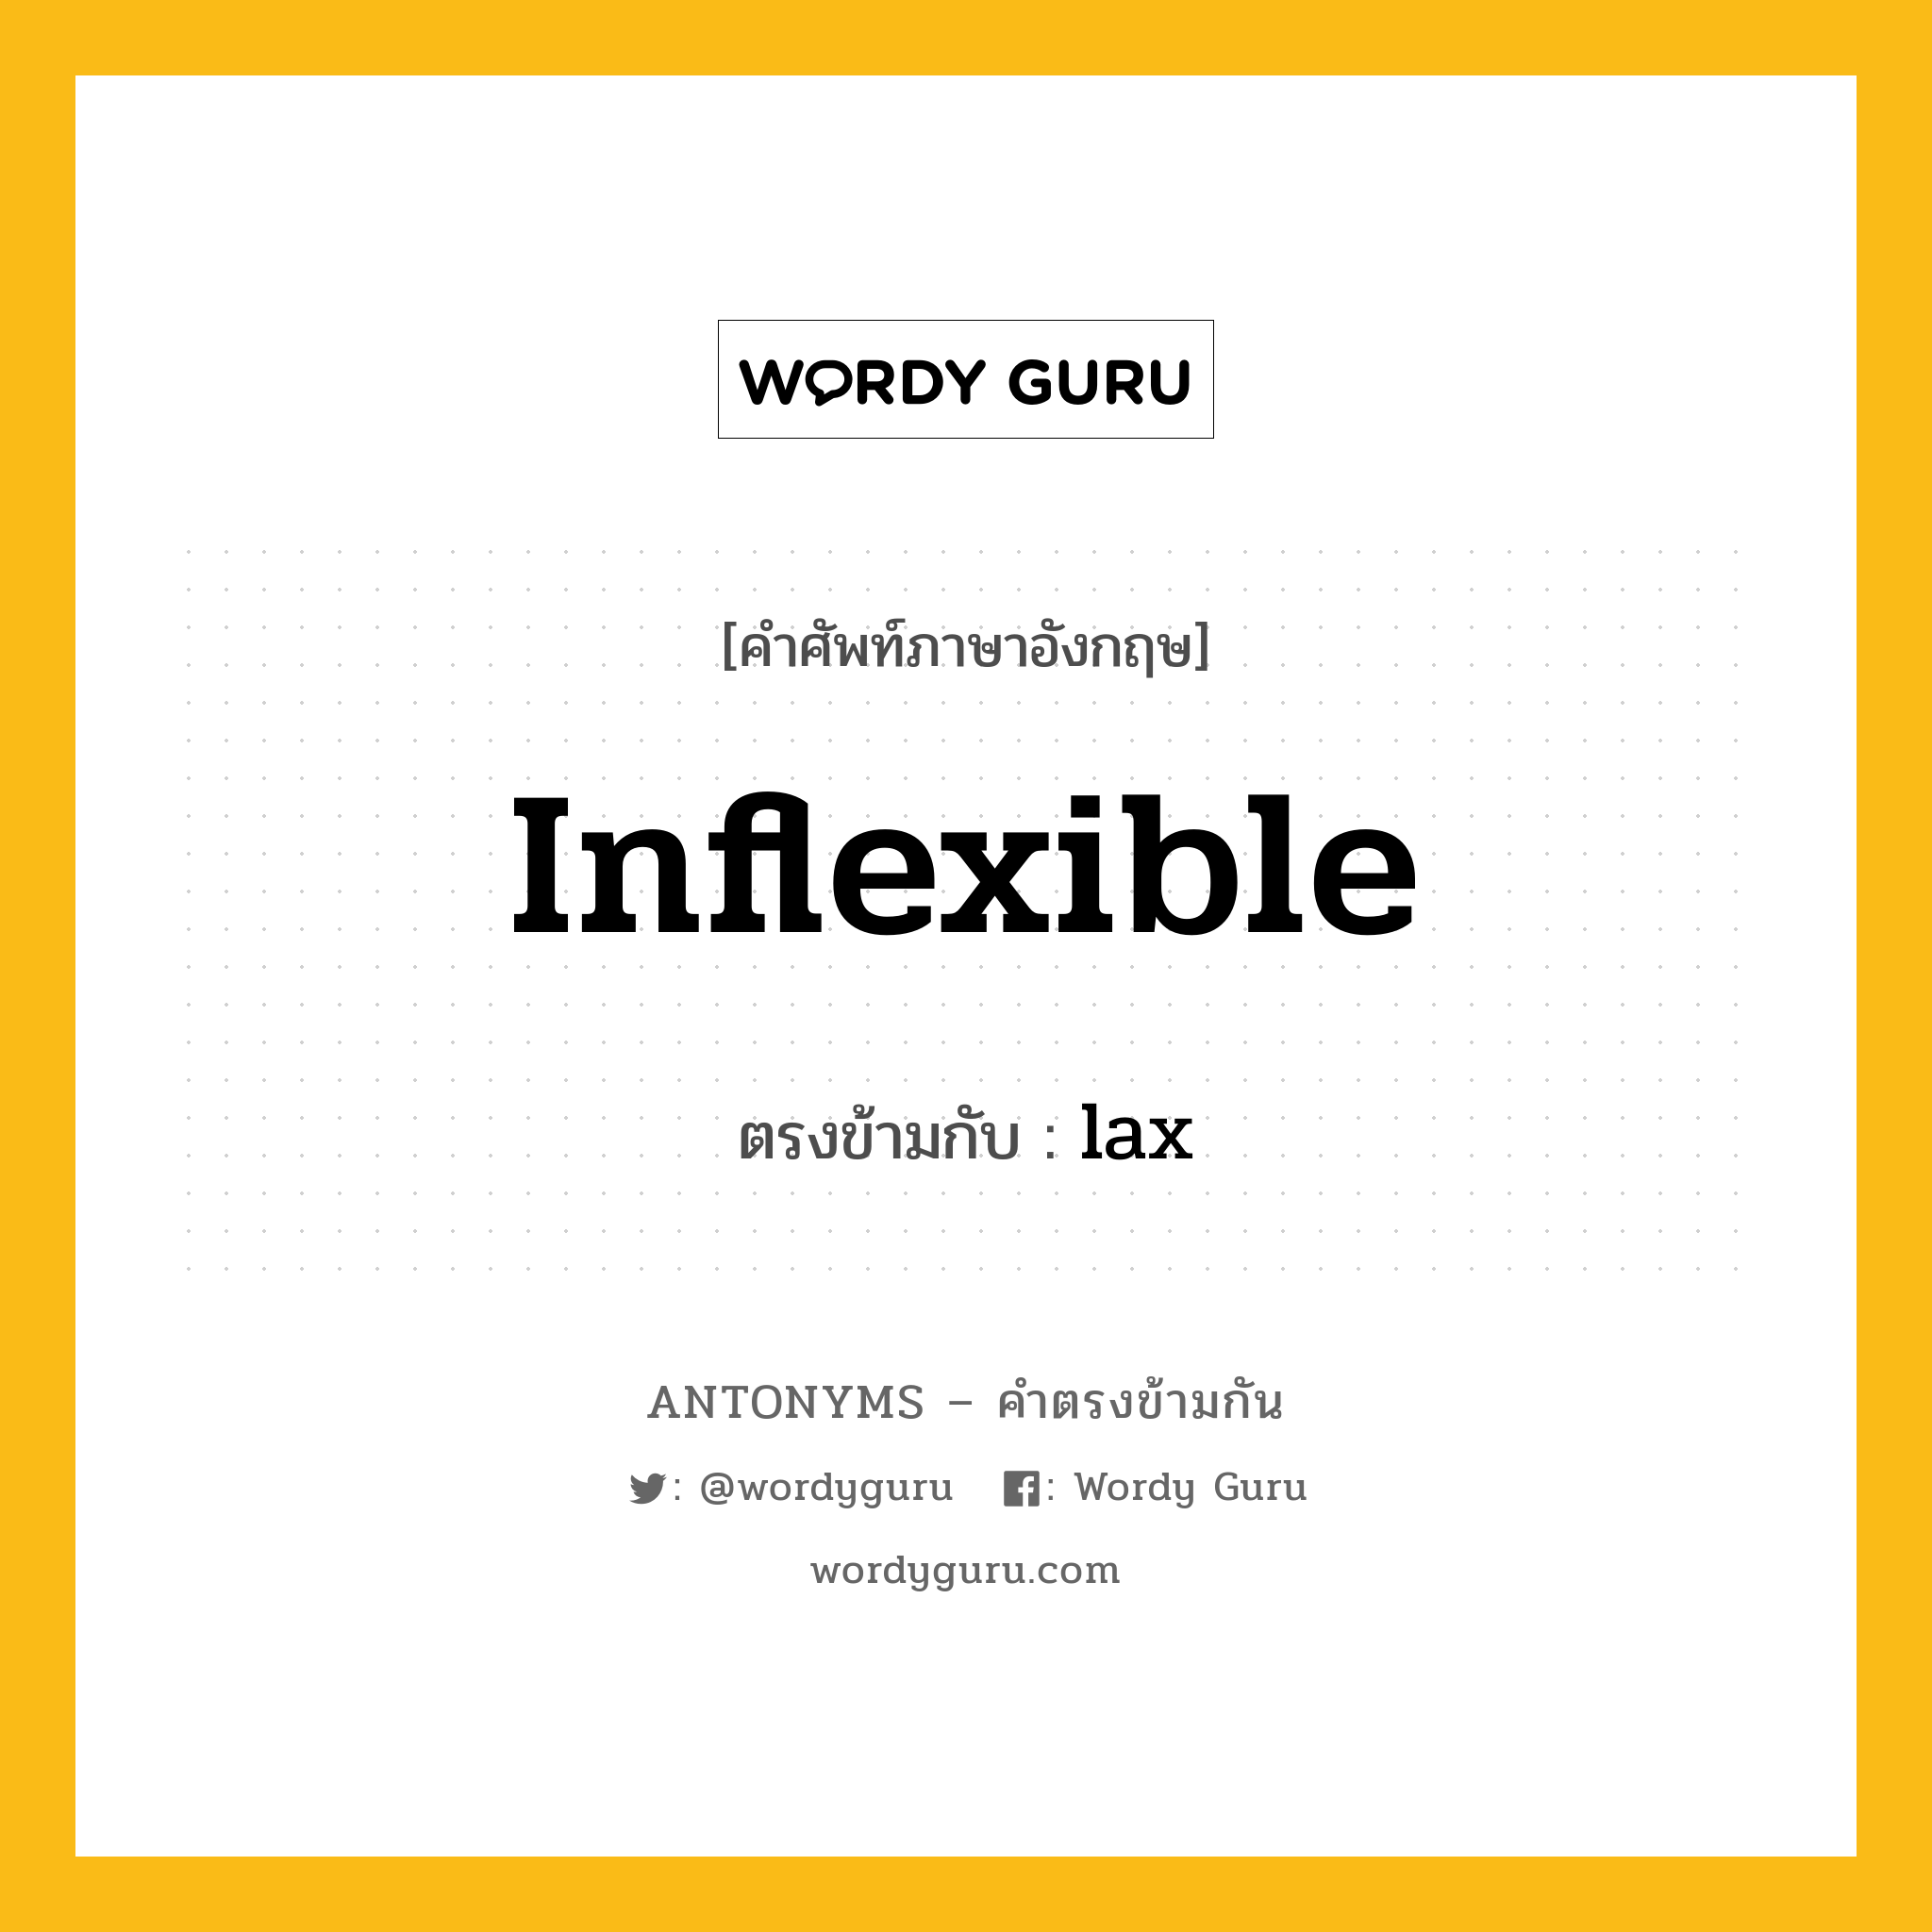 inflexible เป็นคำตรงข้ามกับคำไหนบ้าง?, คำศัพท์ภาษาอังกฤษ inflexible ตรงข้ามกับ lax หมวด lax